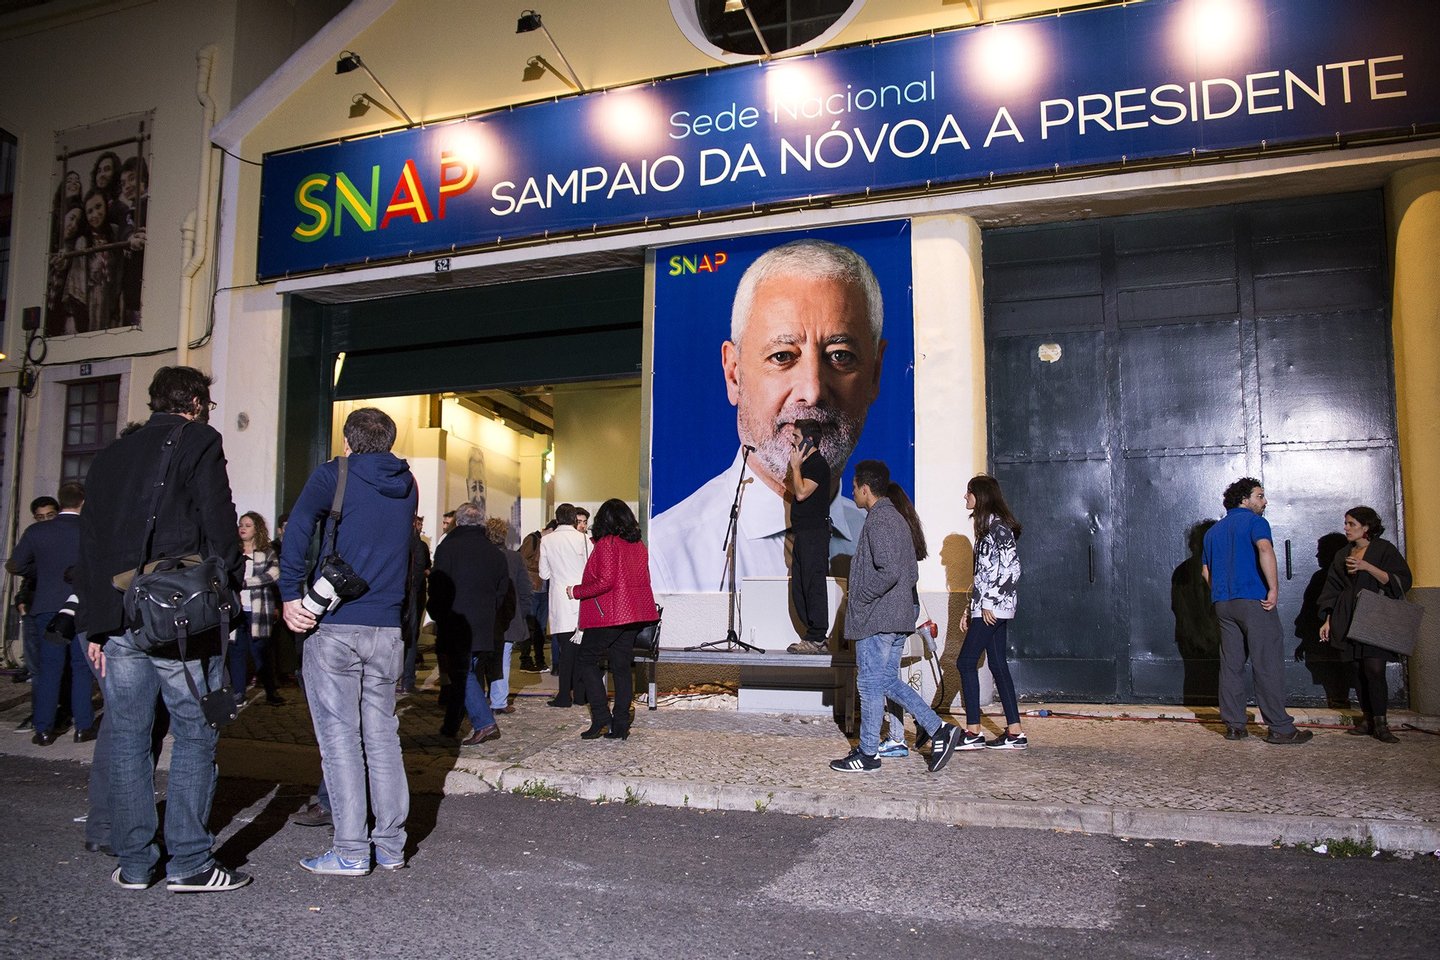 Presidenciais 2016,Sampaio da novoa, sede